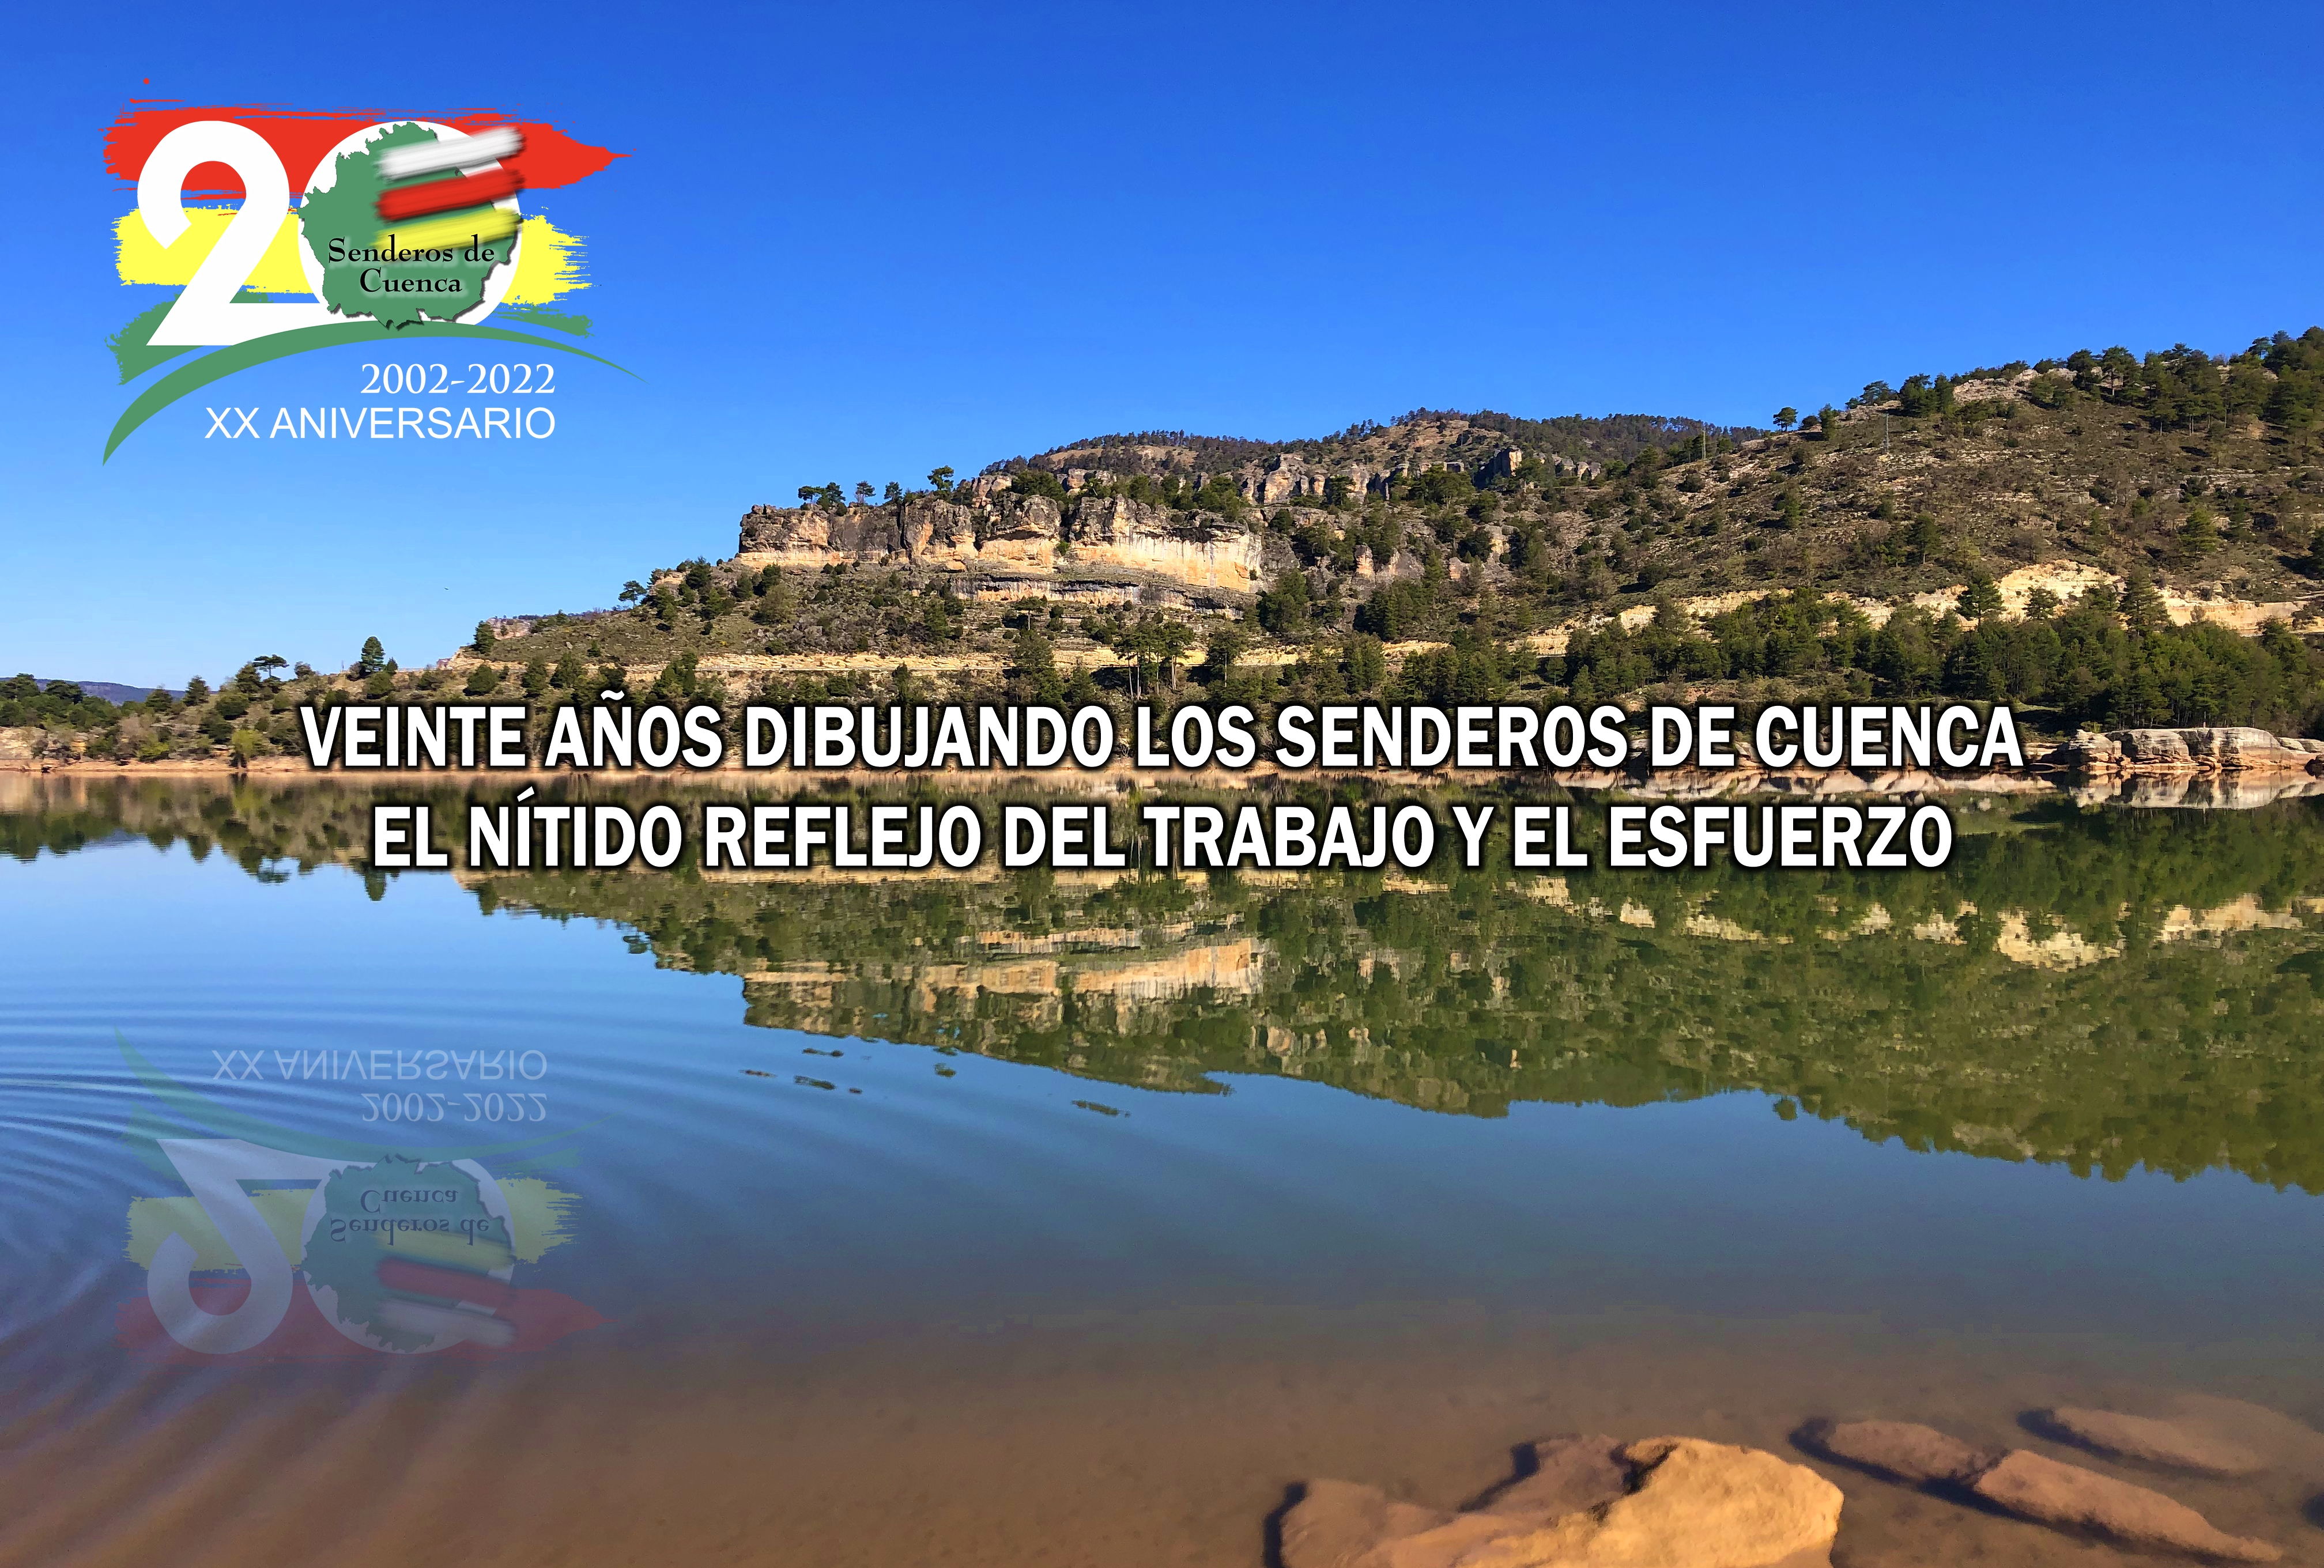 Senderos de Cuenca: XX Aniversario